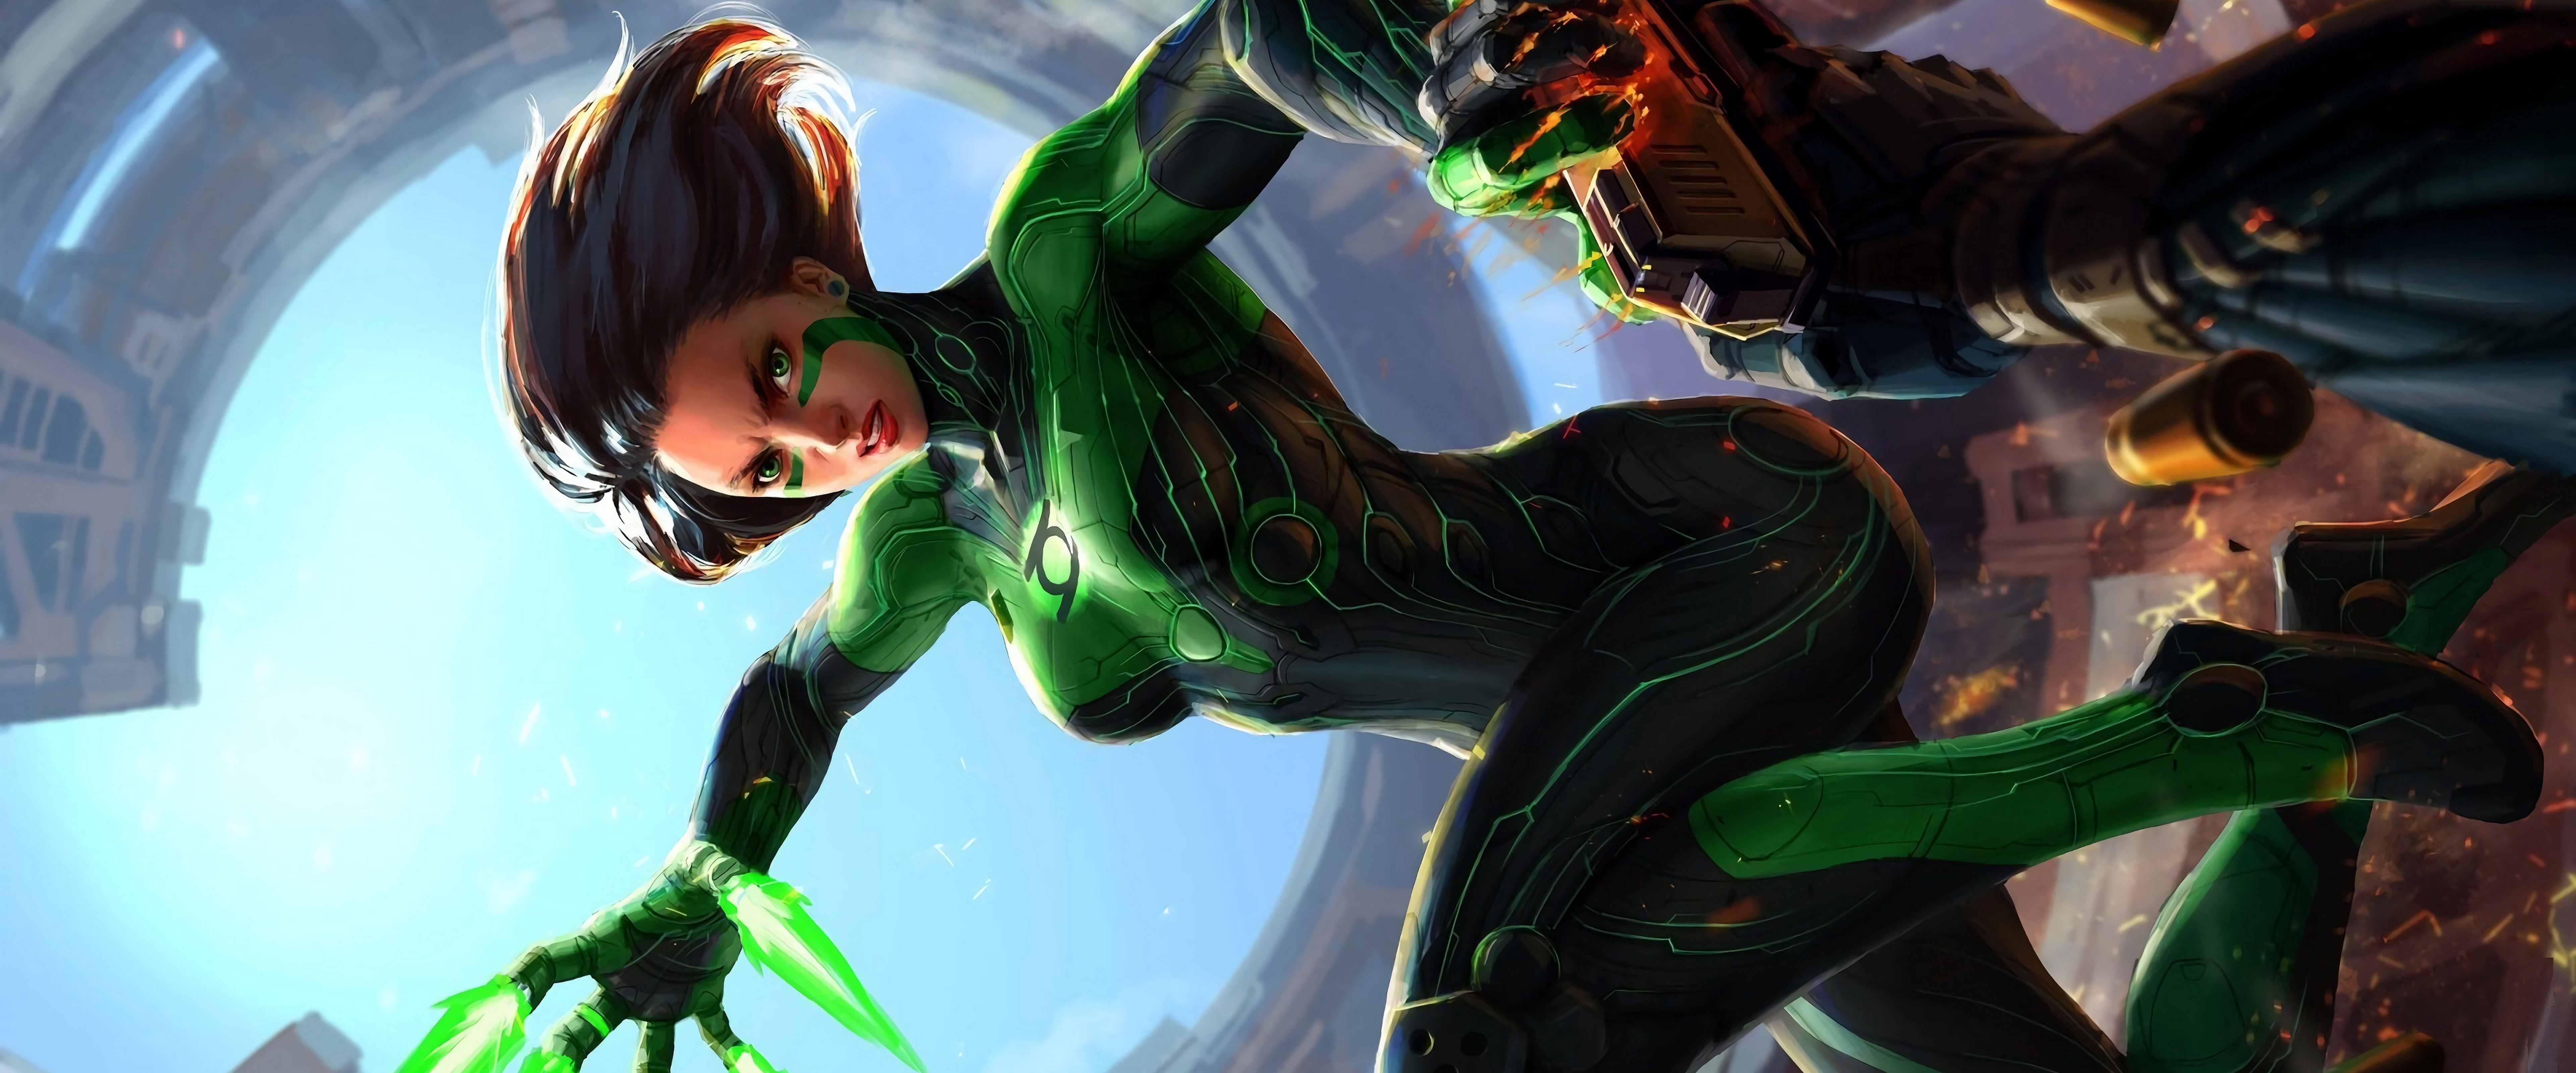 Green Lantern 4K Wallpapers